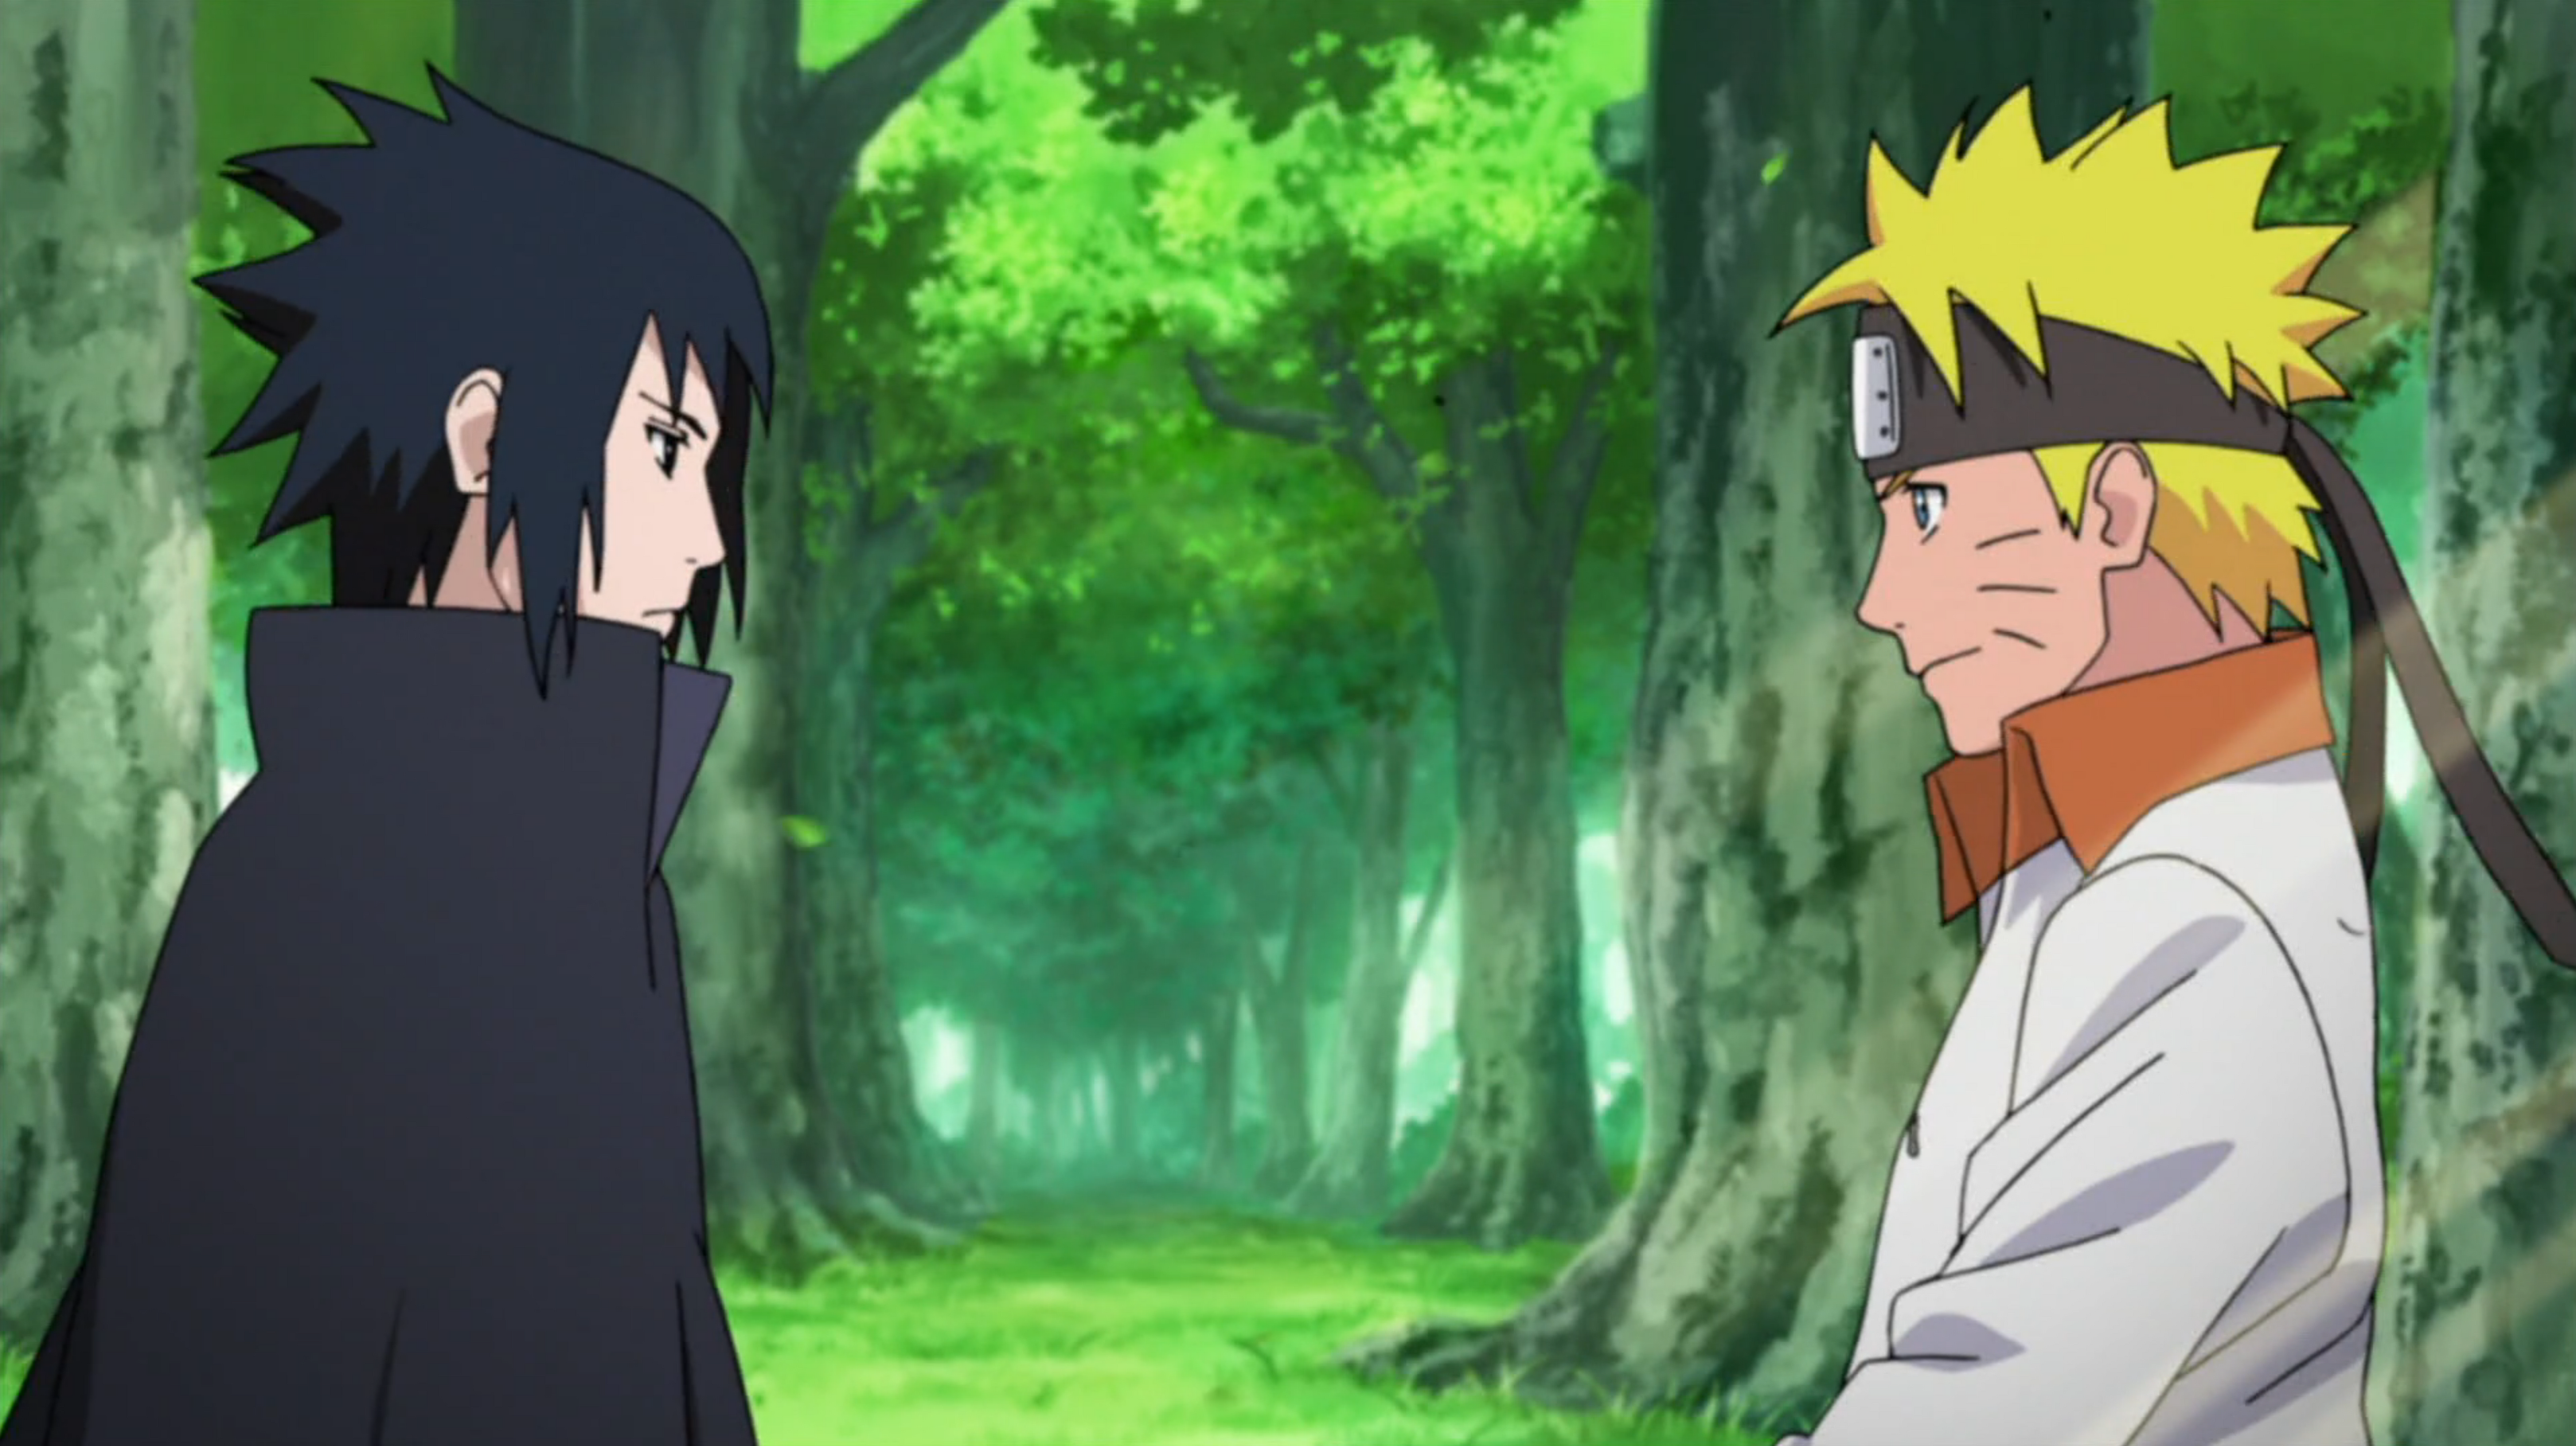 Sasuke muda de lado desde entrar no campo de batalha (Naruto